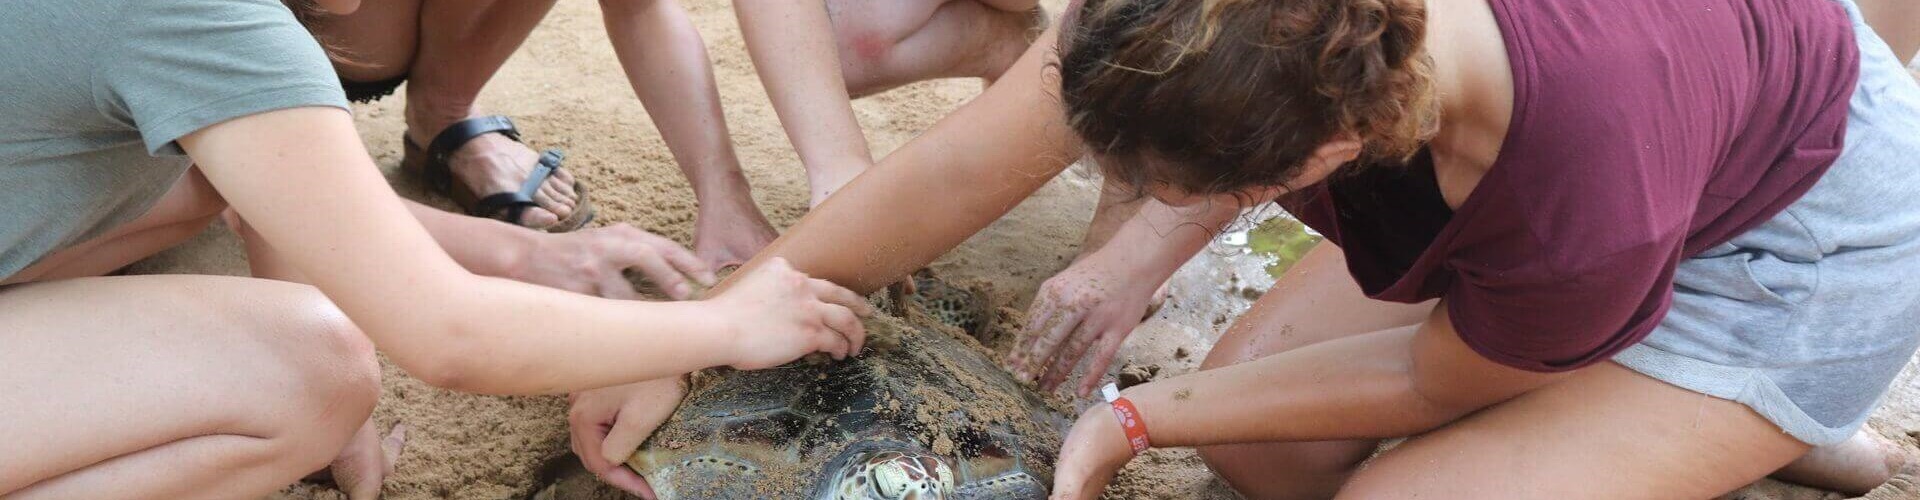 Voluntariado de conservación de tortugas marinas en Sri Lanka